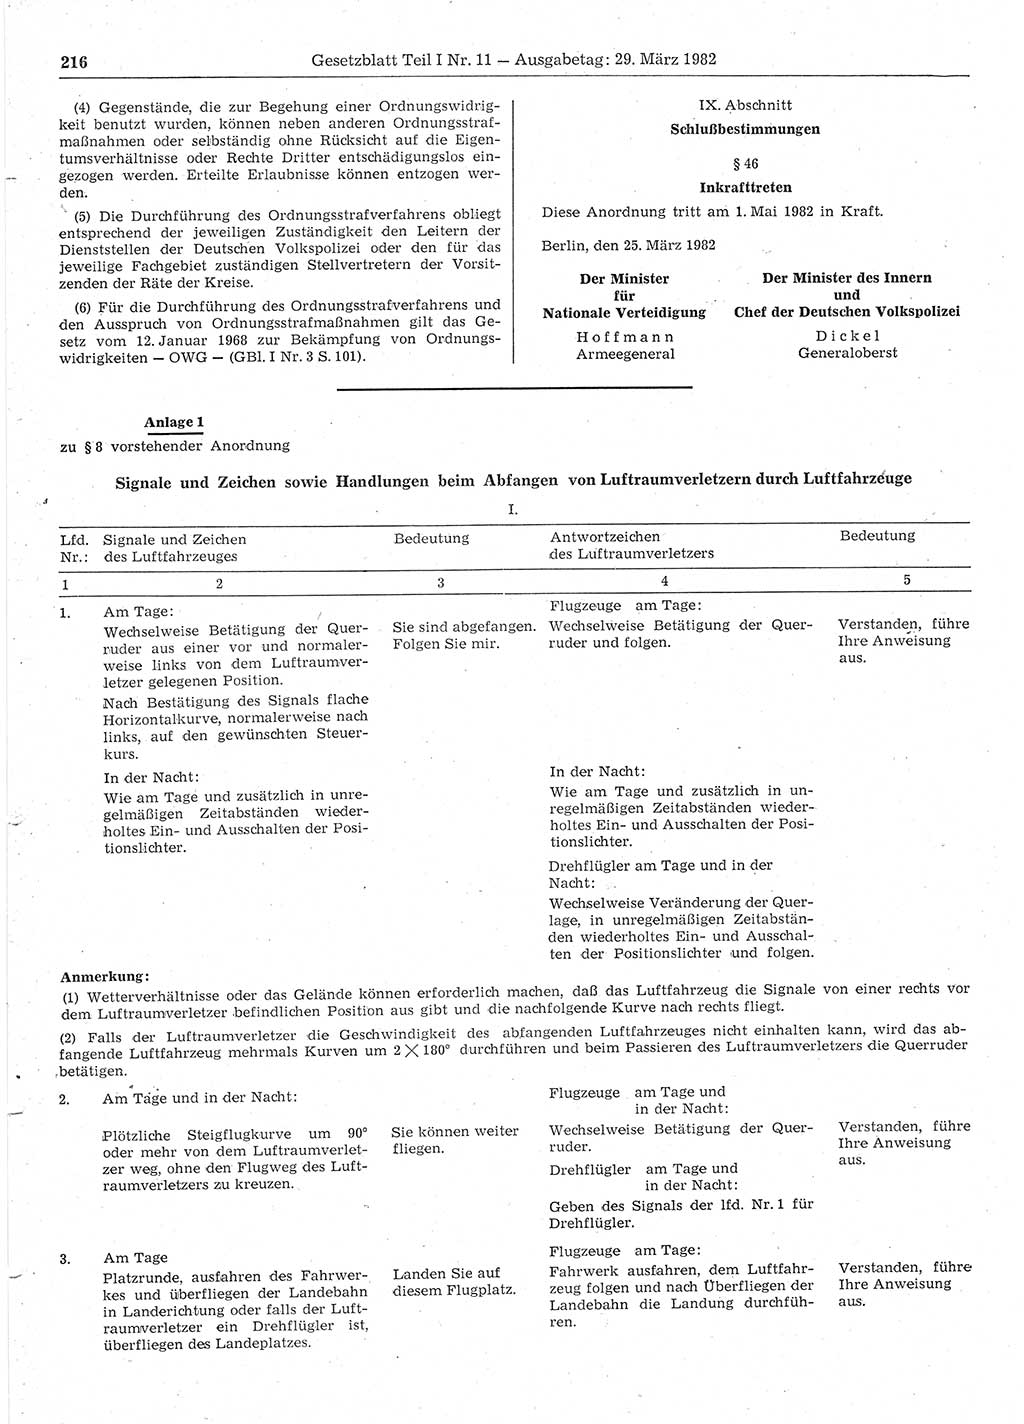 Gesetzblatt (GBl.) der Deutschen Demokratischen Republik (DDR) Teil Ⅰ 1982, Seite 216 (GBl. DDR Ⅰ 1982, S. 216)